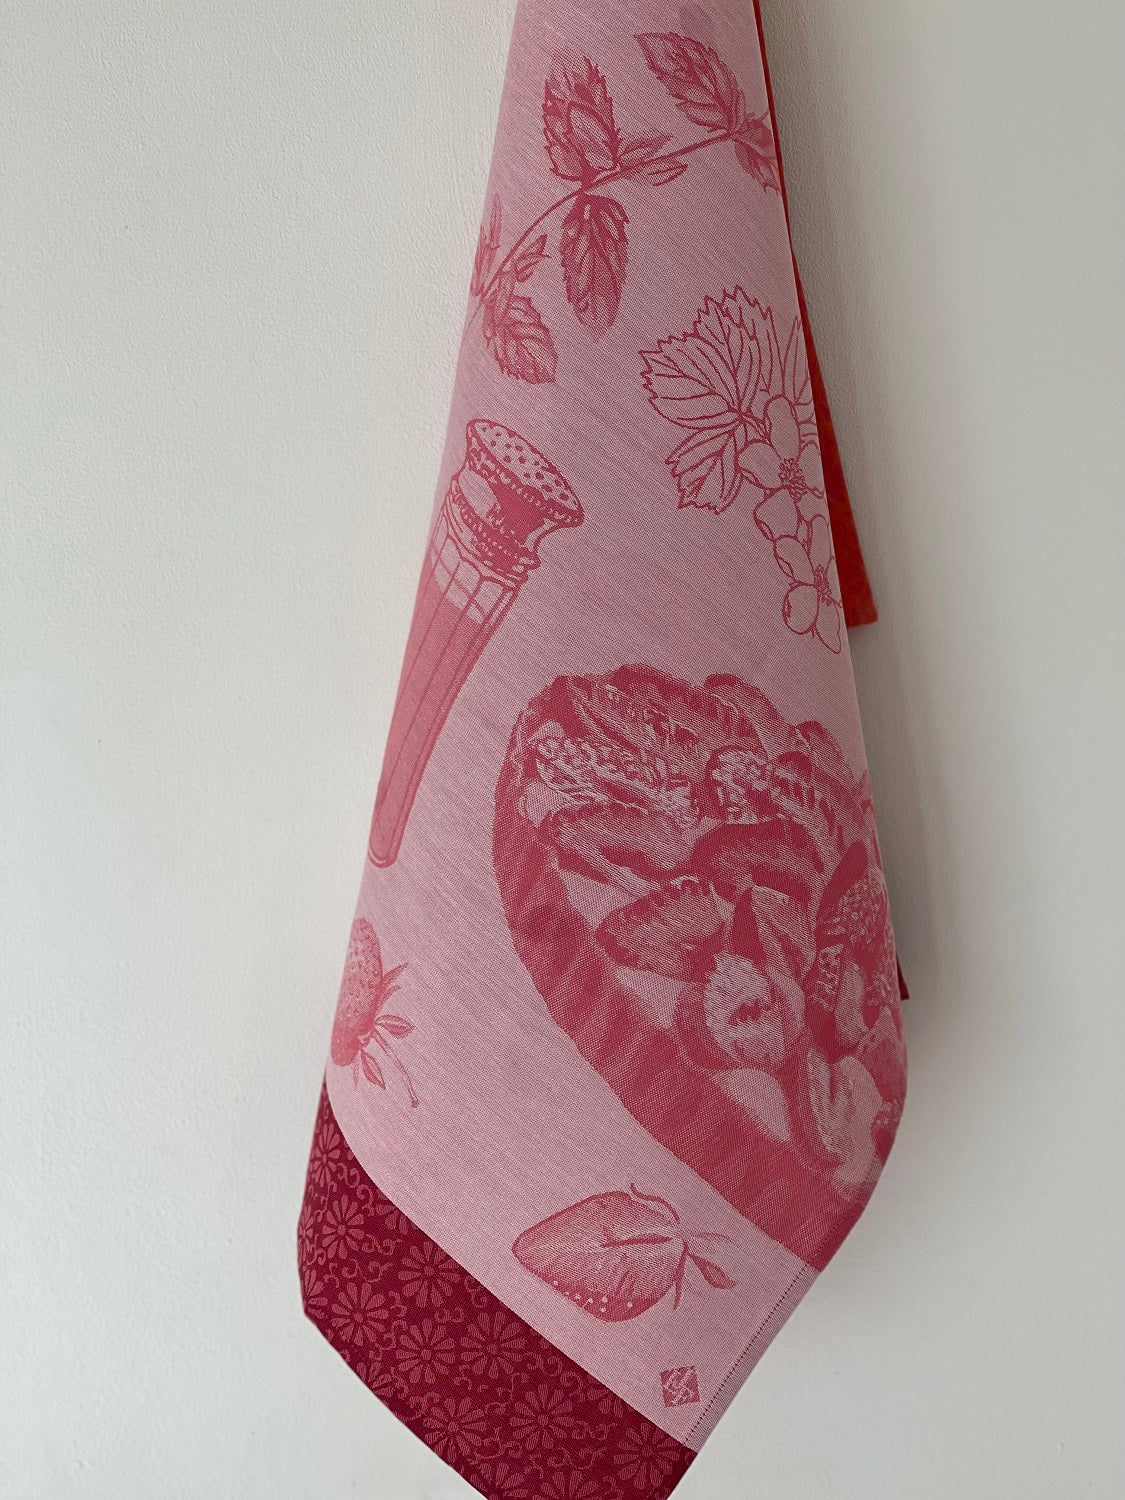 Jacquard Francais "Tarte aux Fraises" (Pink), Woven cotton tea towel. Made in France.